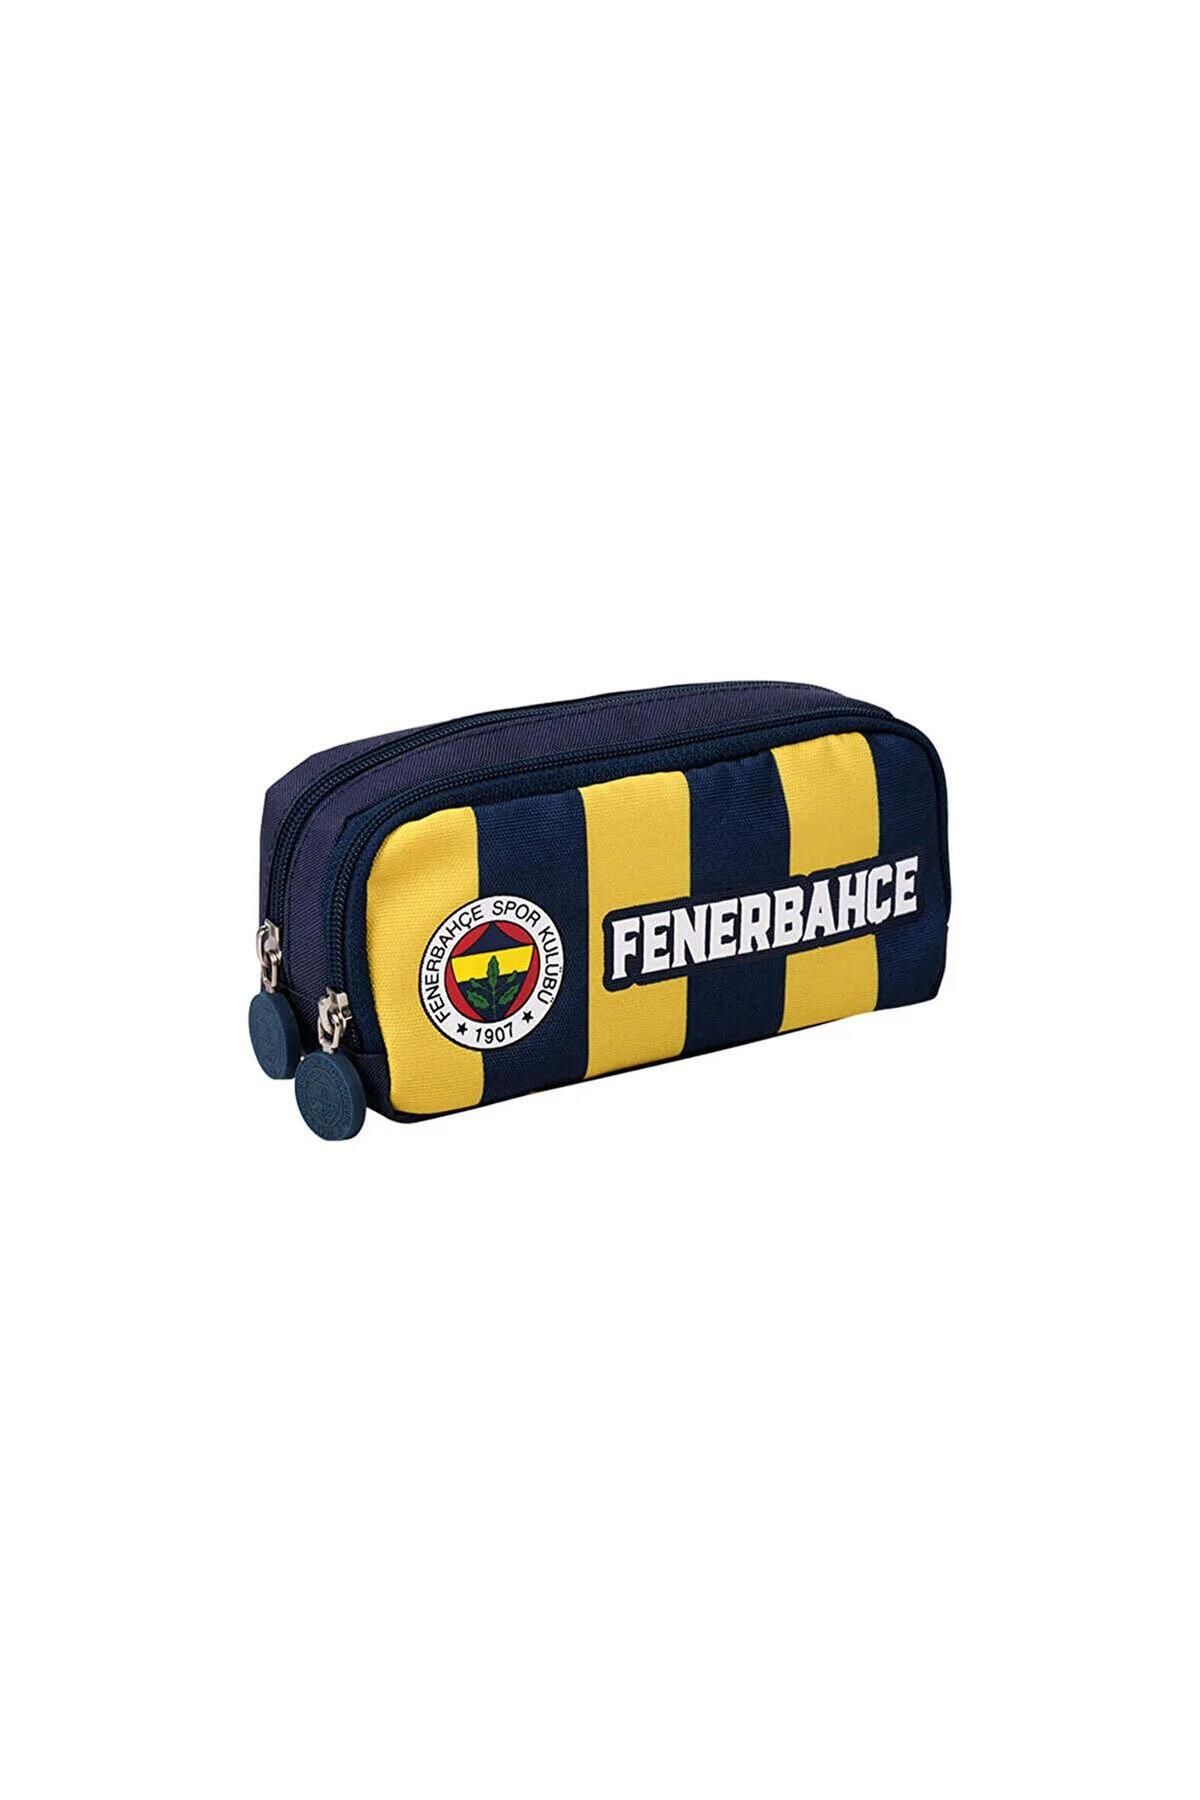 Fenerbahçe Çubuklu Forma Desenli İki Bölmeli Kalemlik Kalem Çantası